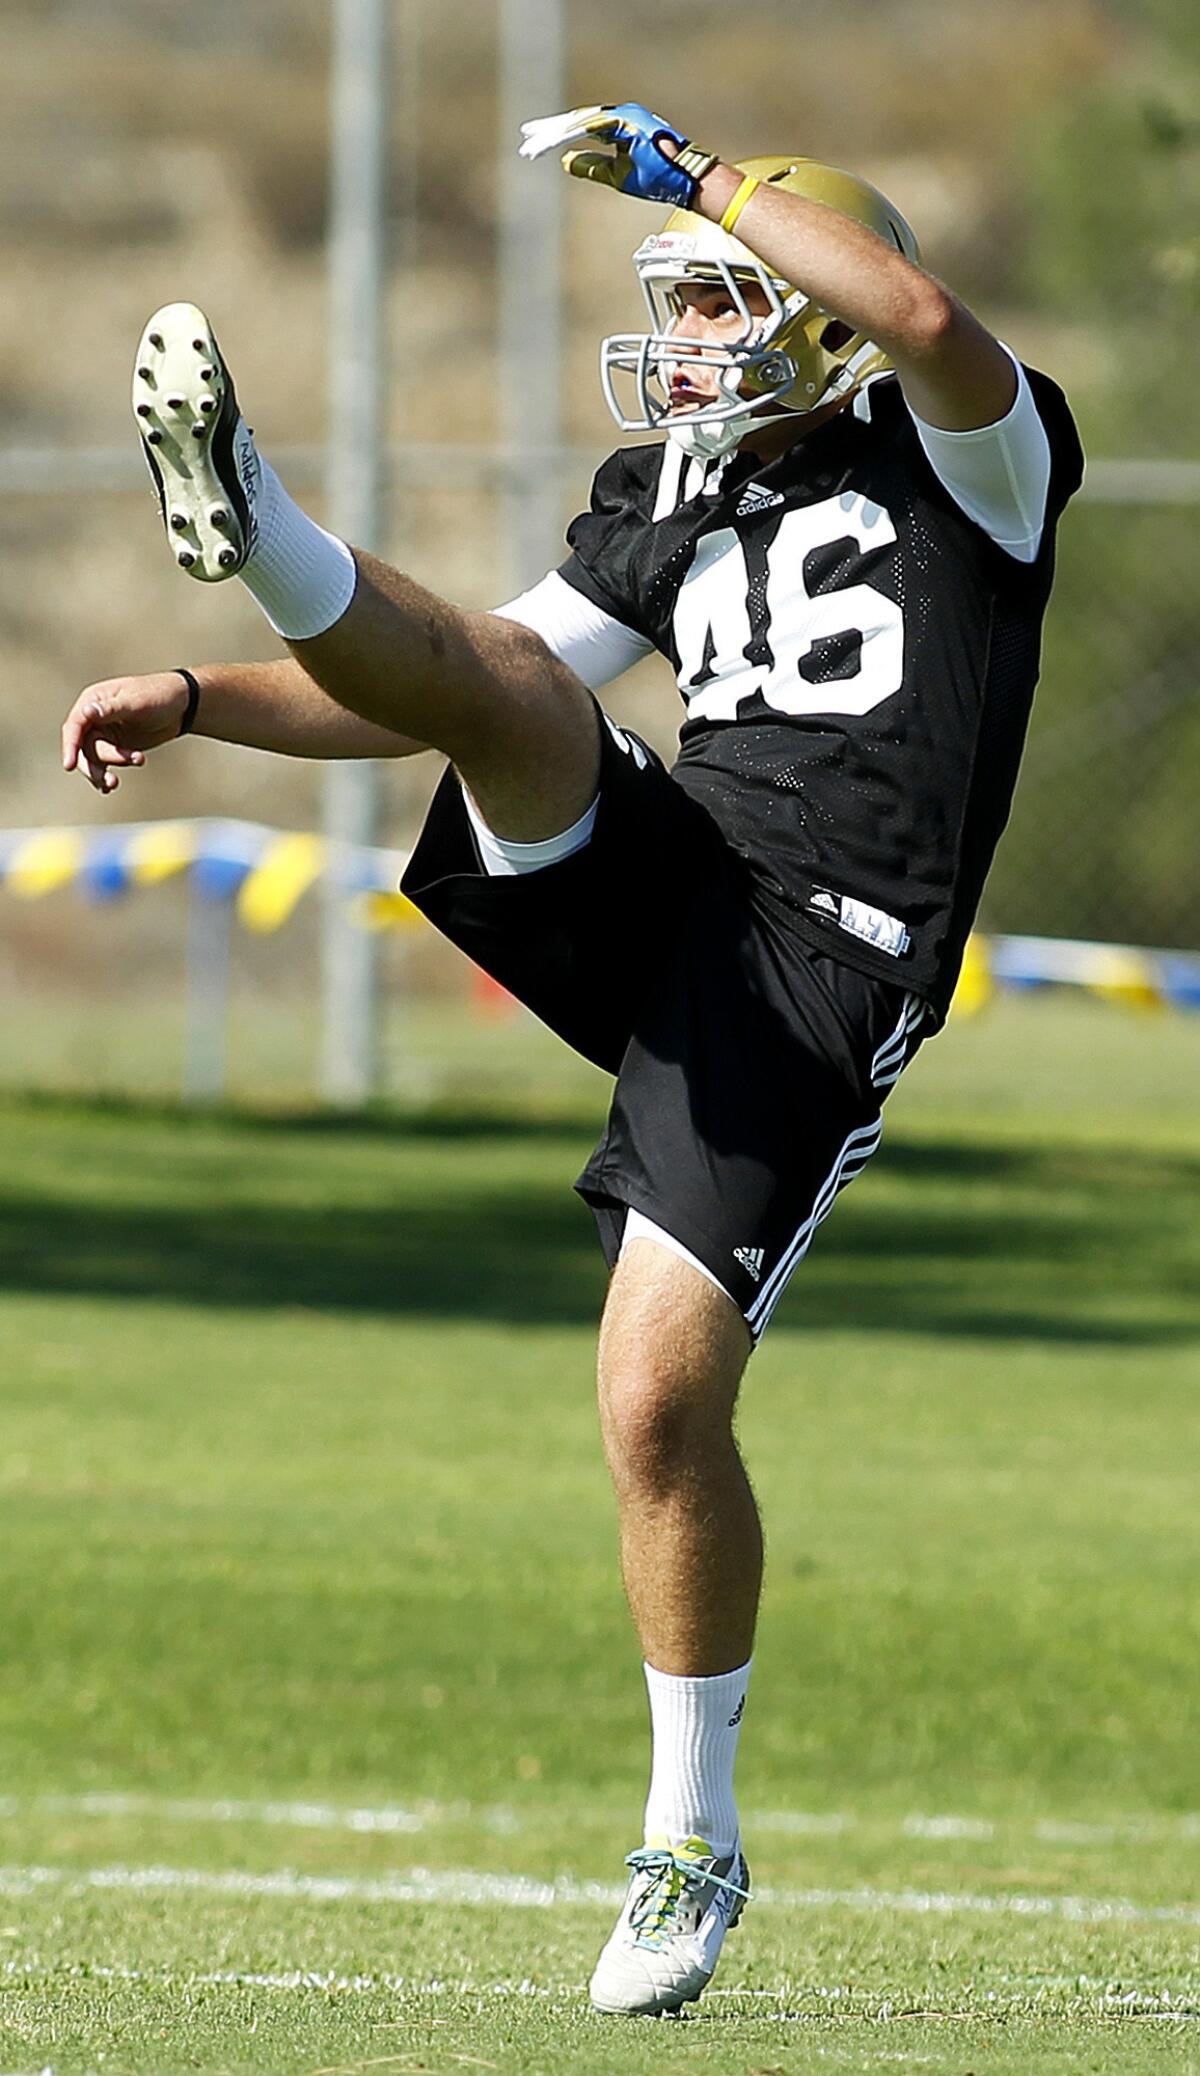 Matt Mengel kicks a ball during an Aug. 4 UCLA football practice at Cal State San Bernardino.